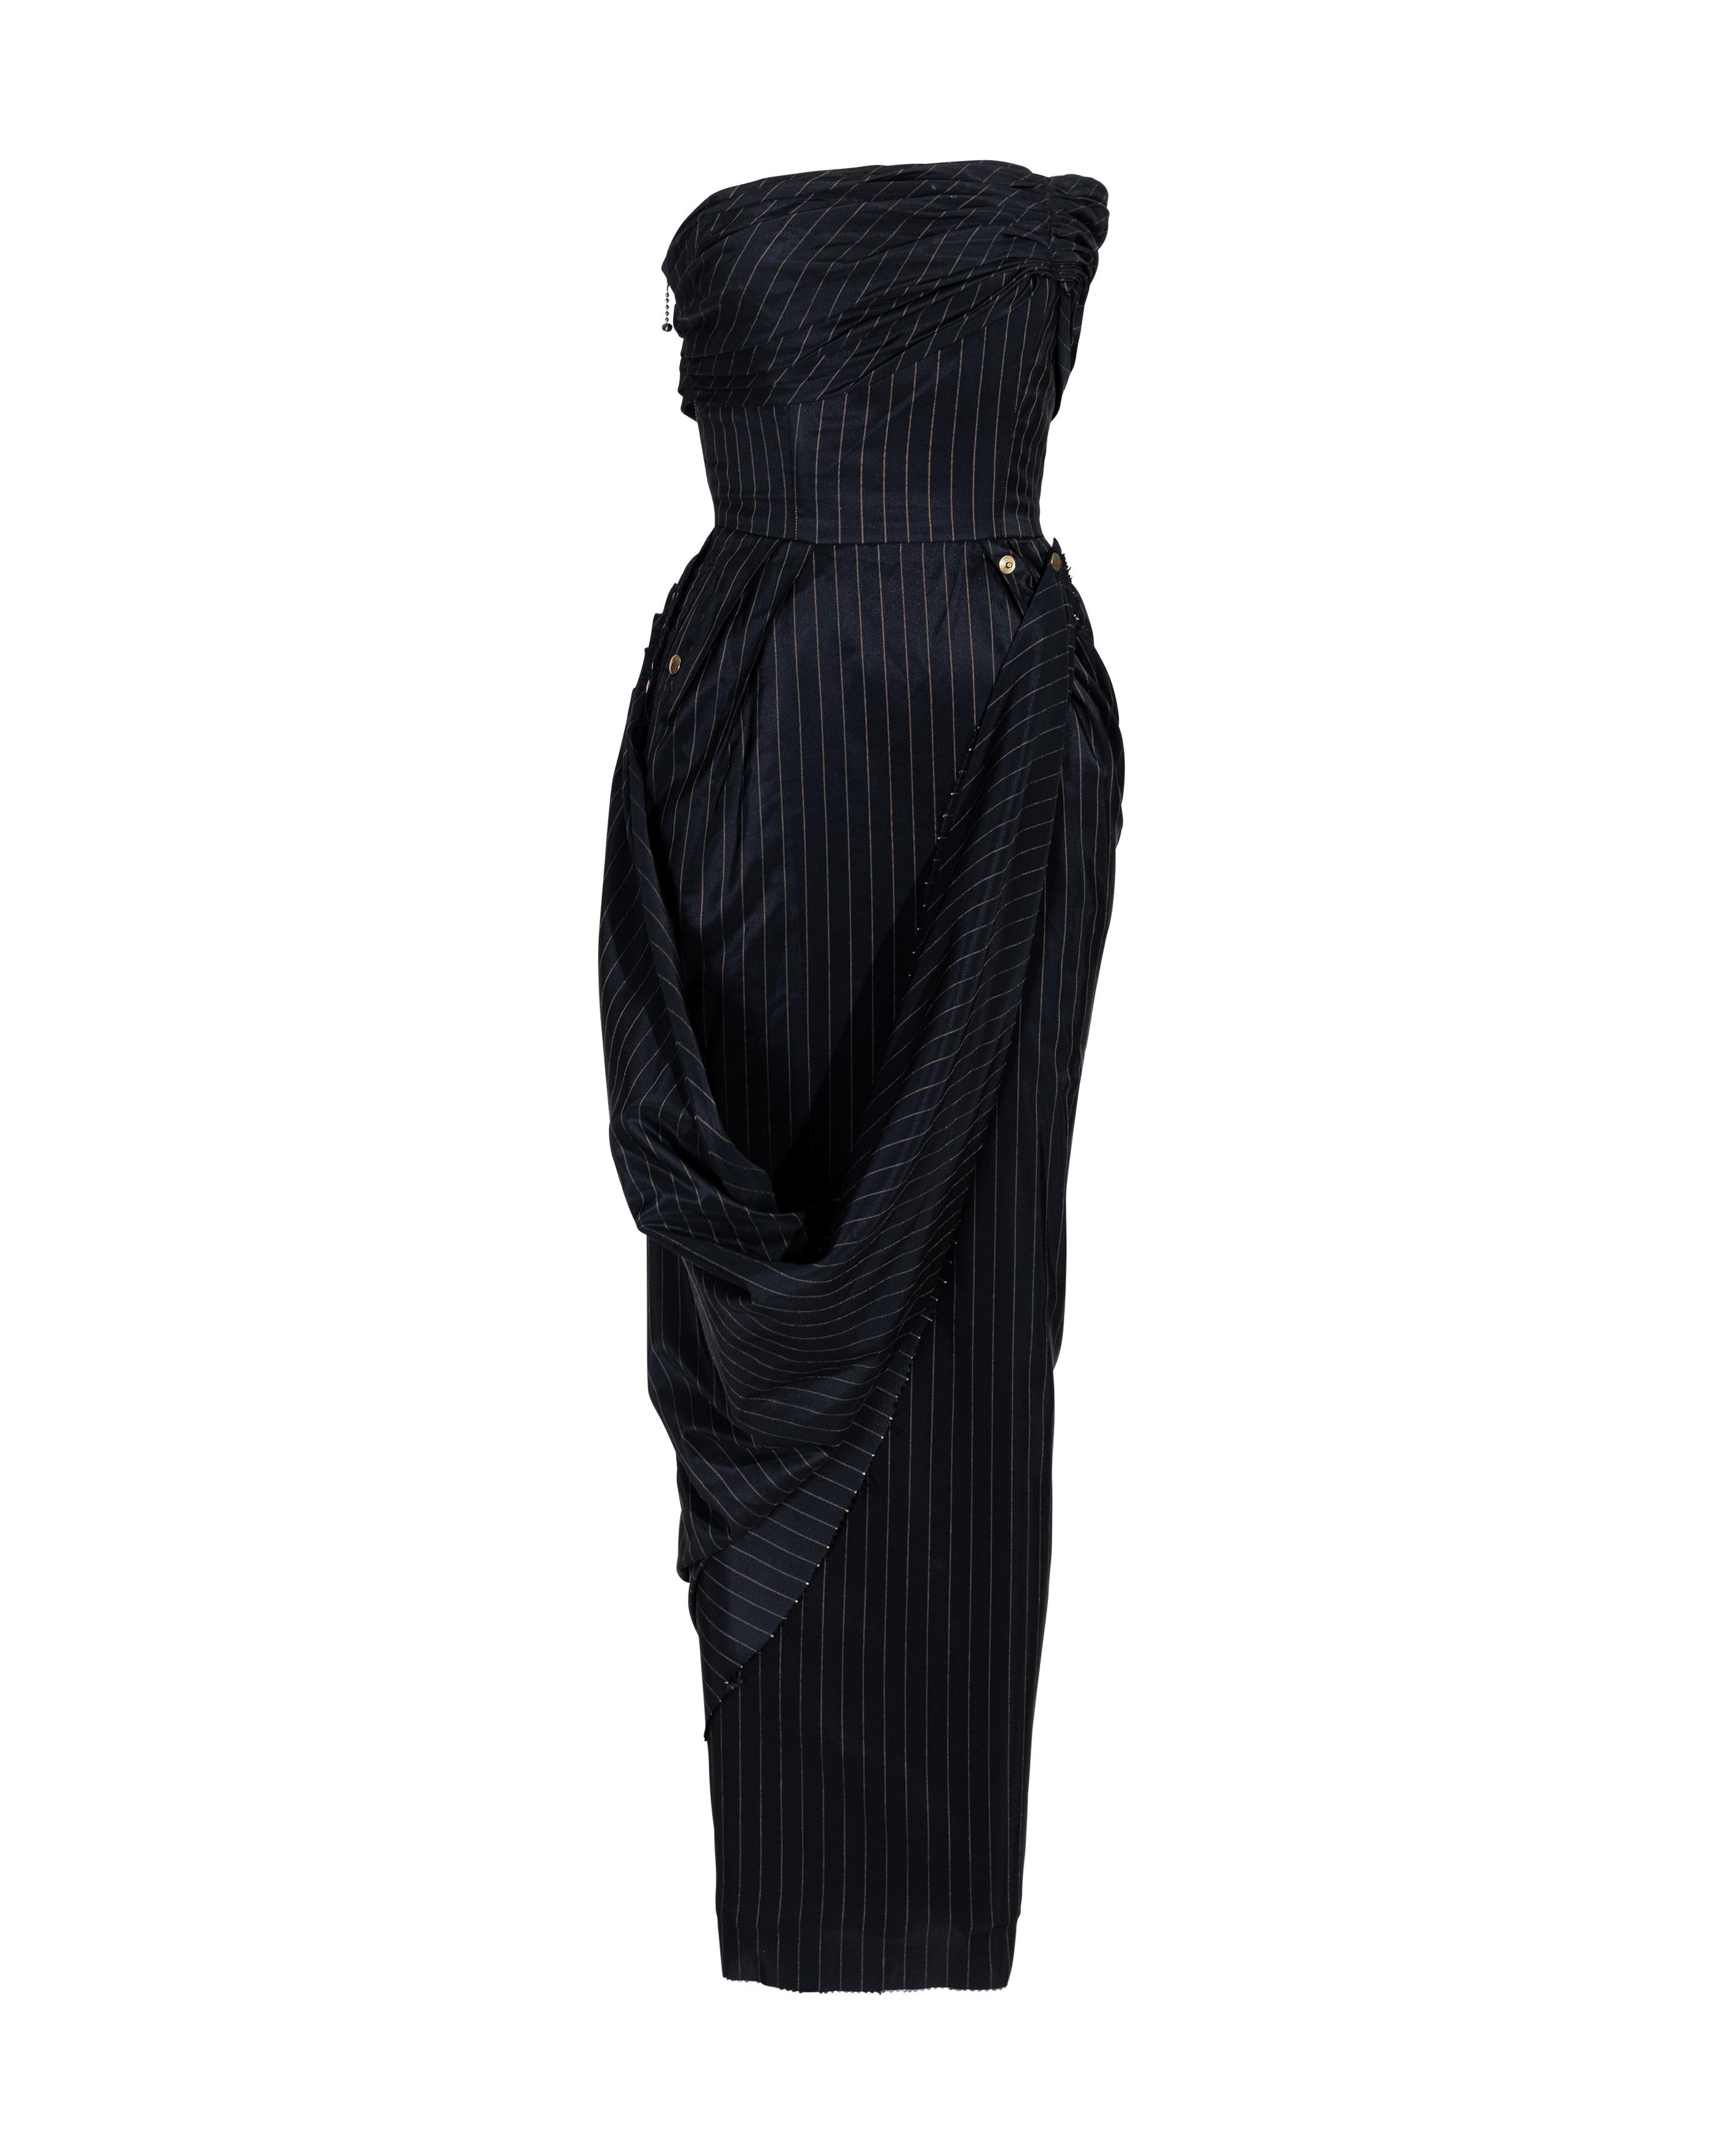 S/S 1995 Jean Paul Gaultier Pinstripe Strapless Bustle Gown 4